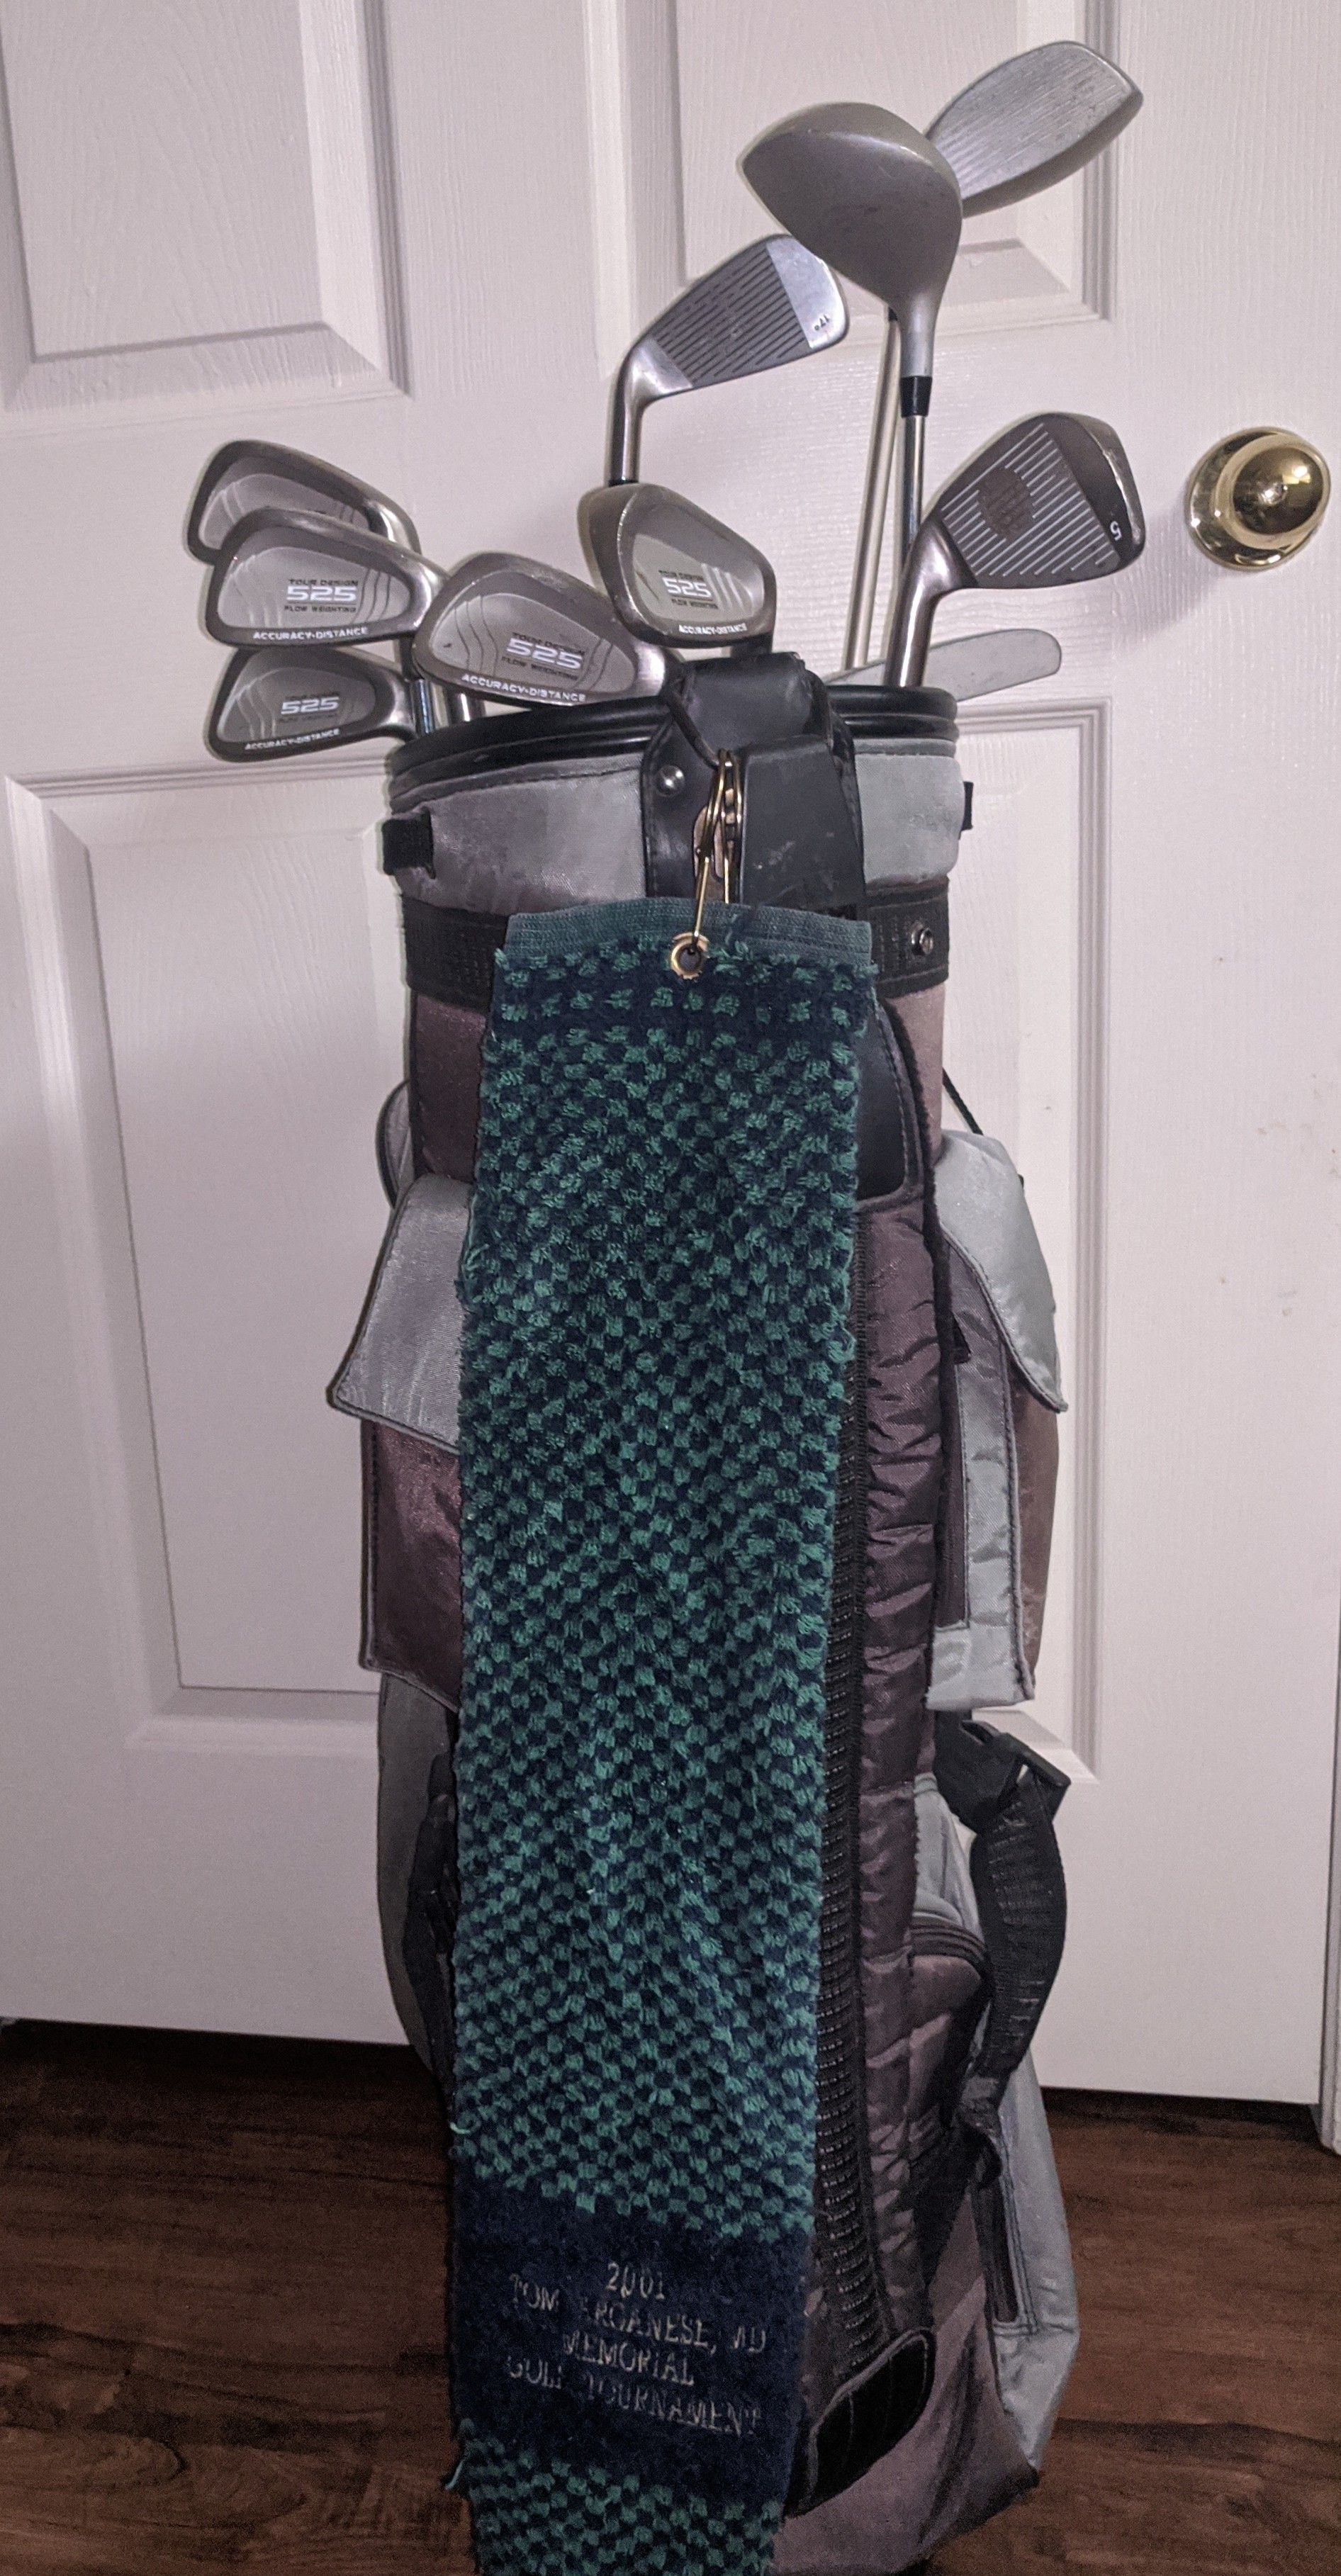 Daiwa golf bag with Knight golf clubs